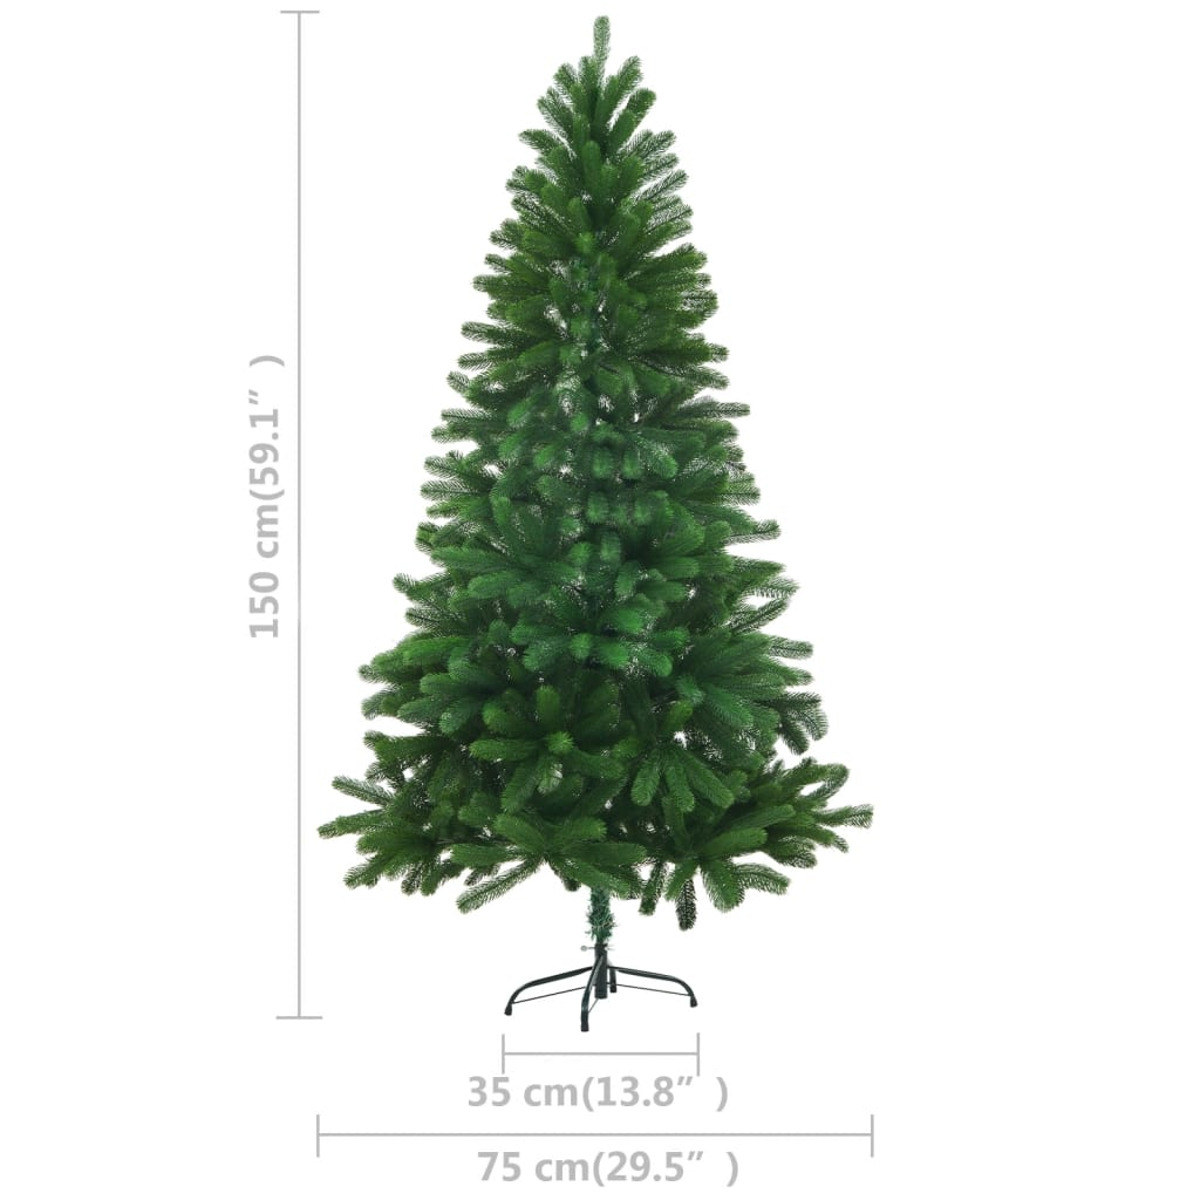 VIDAXL 3077640 Weihnachtsbaum